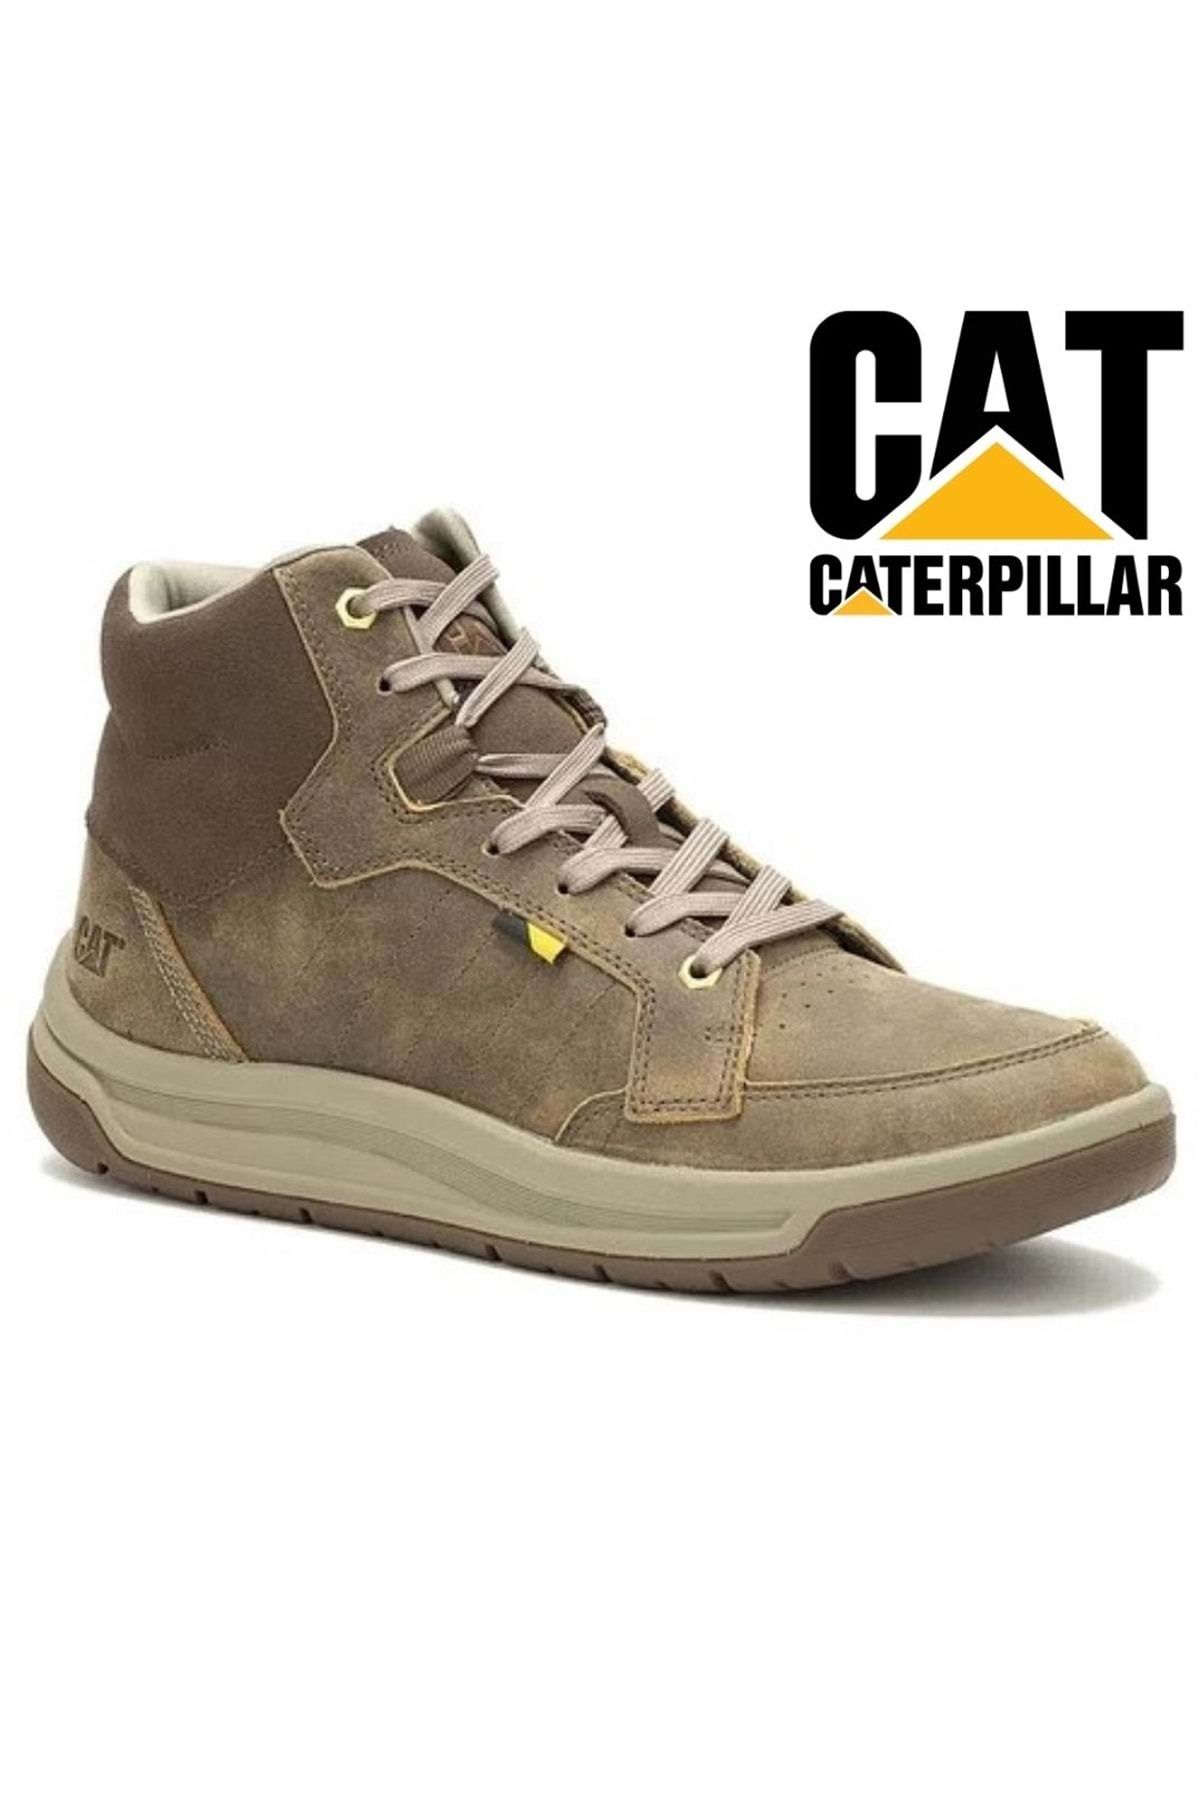 Cat Caterpillar P725849 Apa Cush Mid Boots Casual Erkek Bot KUM